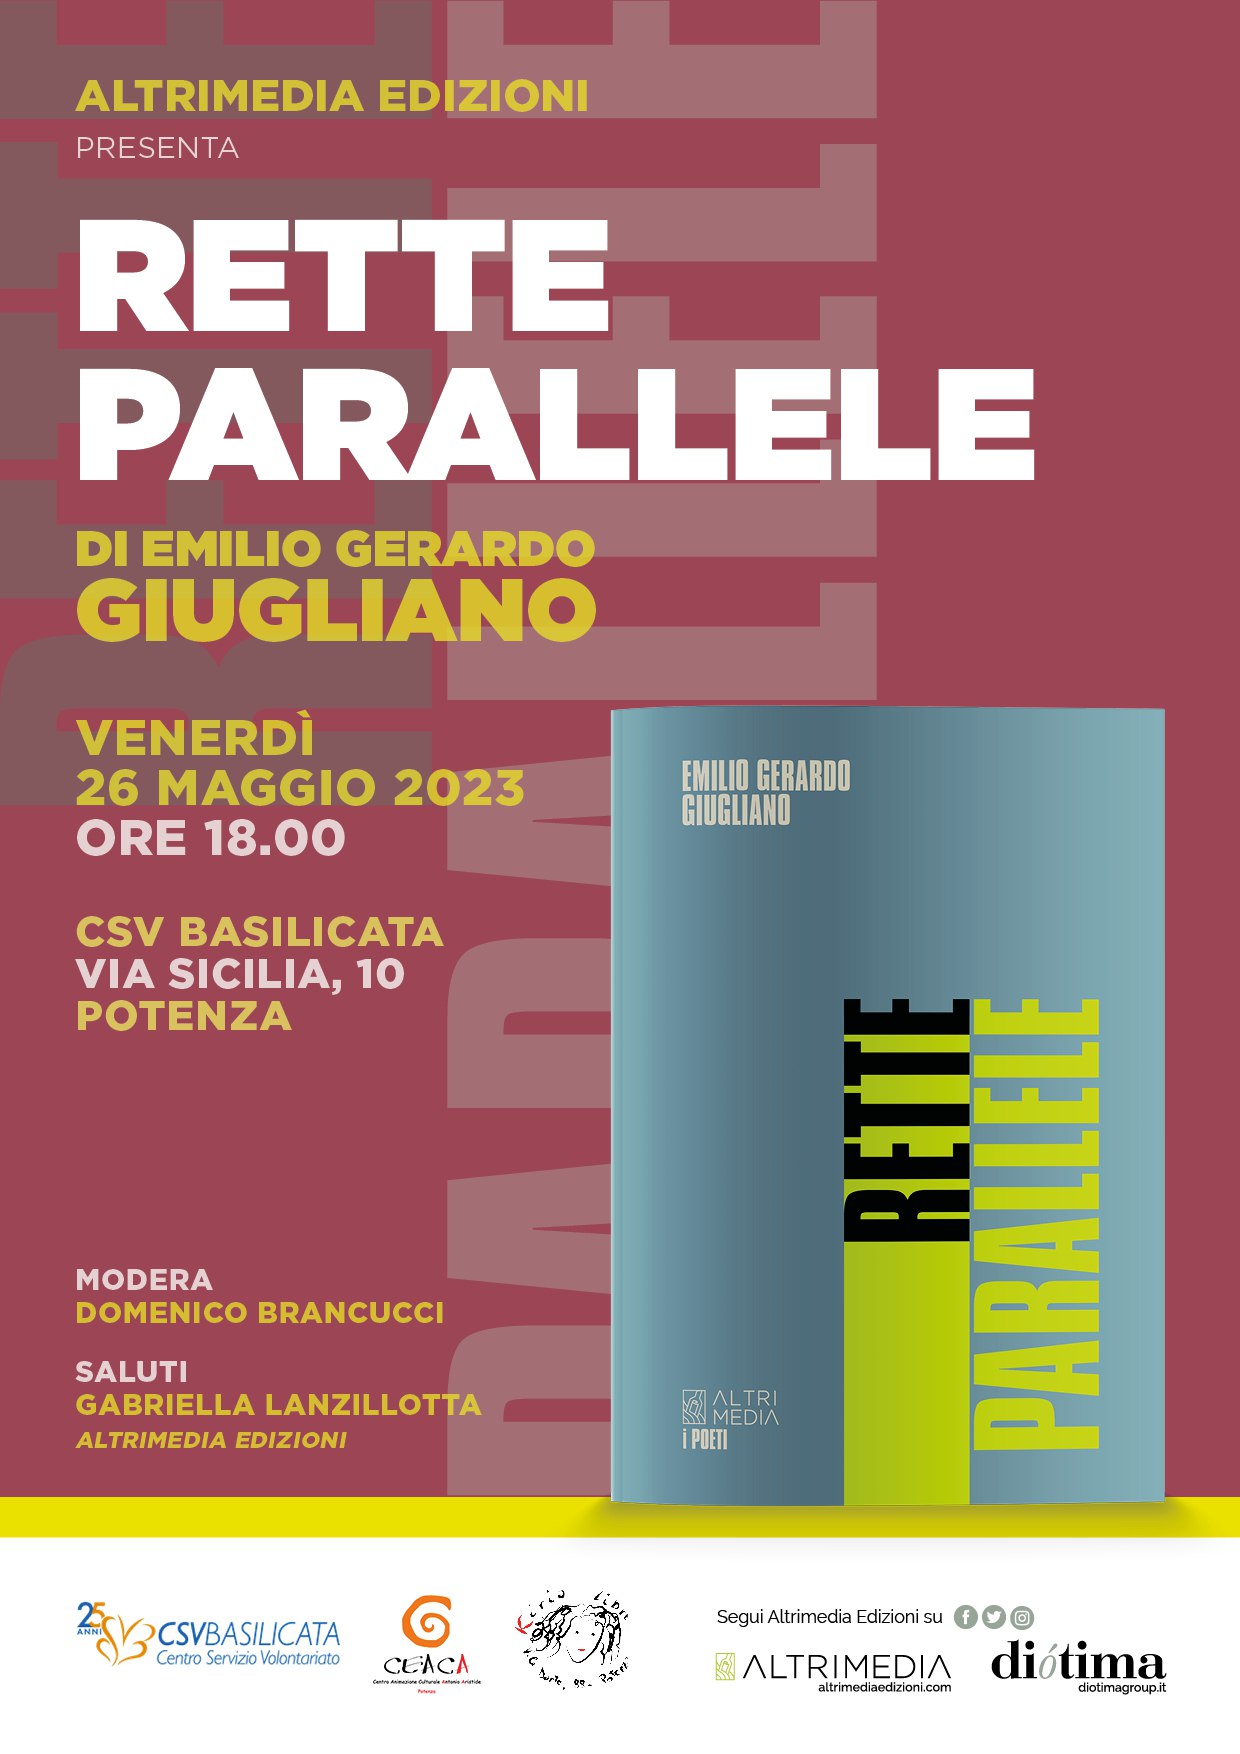 Venerdì 26 maggio a Potenza presentazione di “Rette parallele”, la nuova silloge di Emilio Gerardo Giugliano